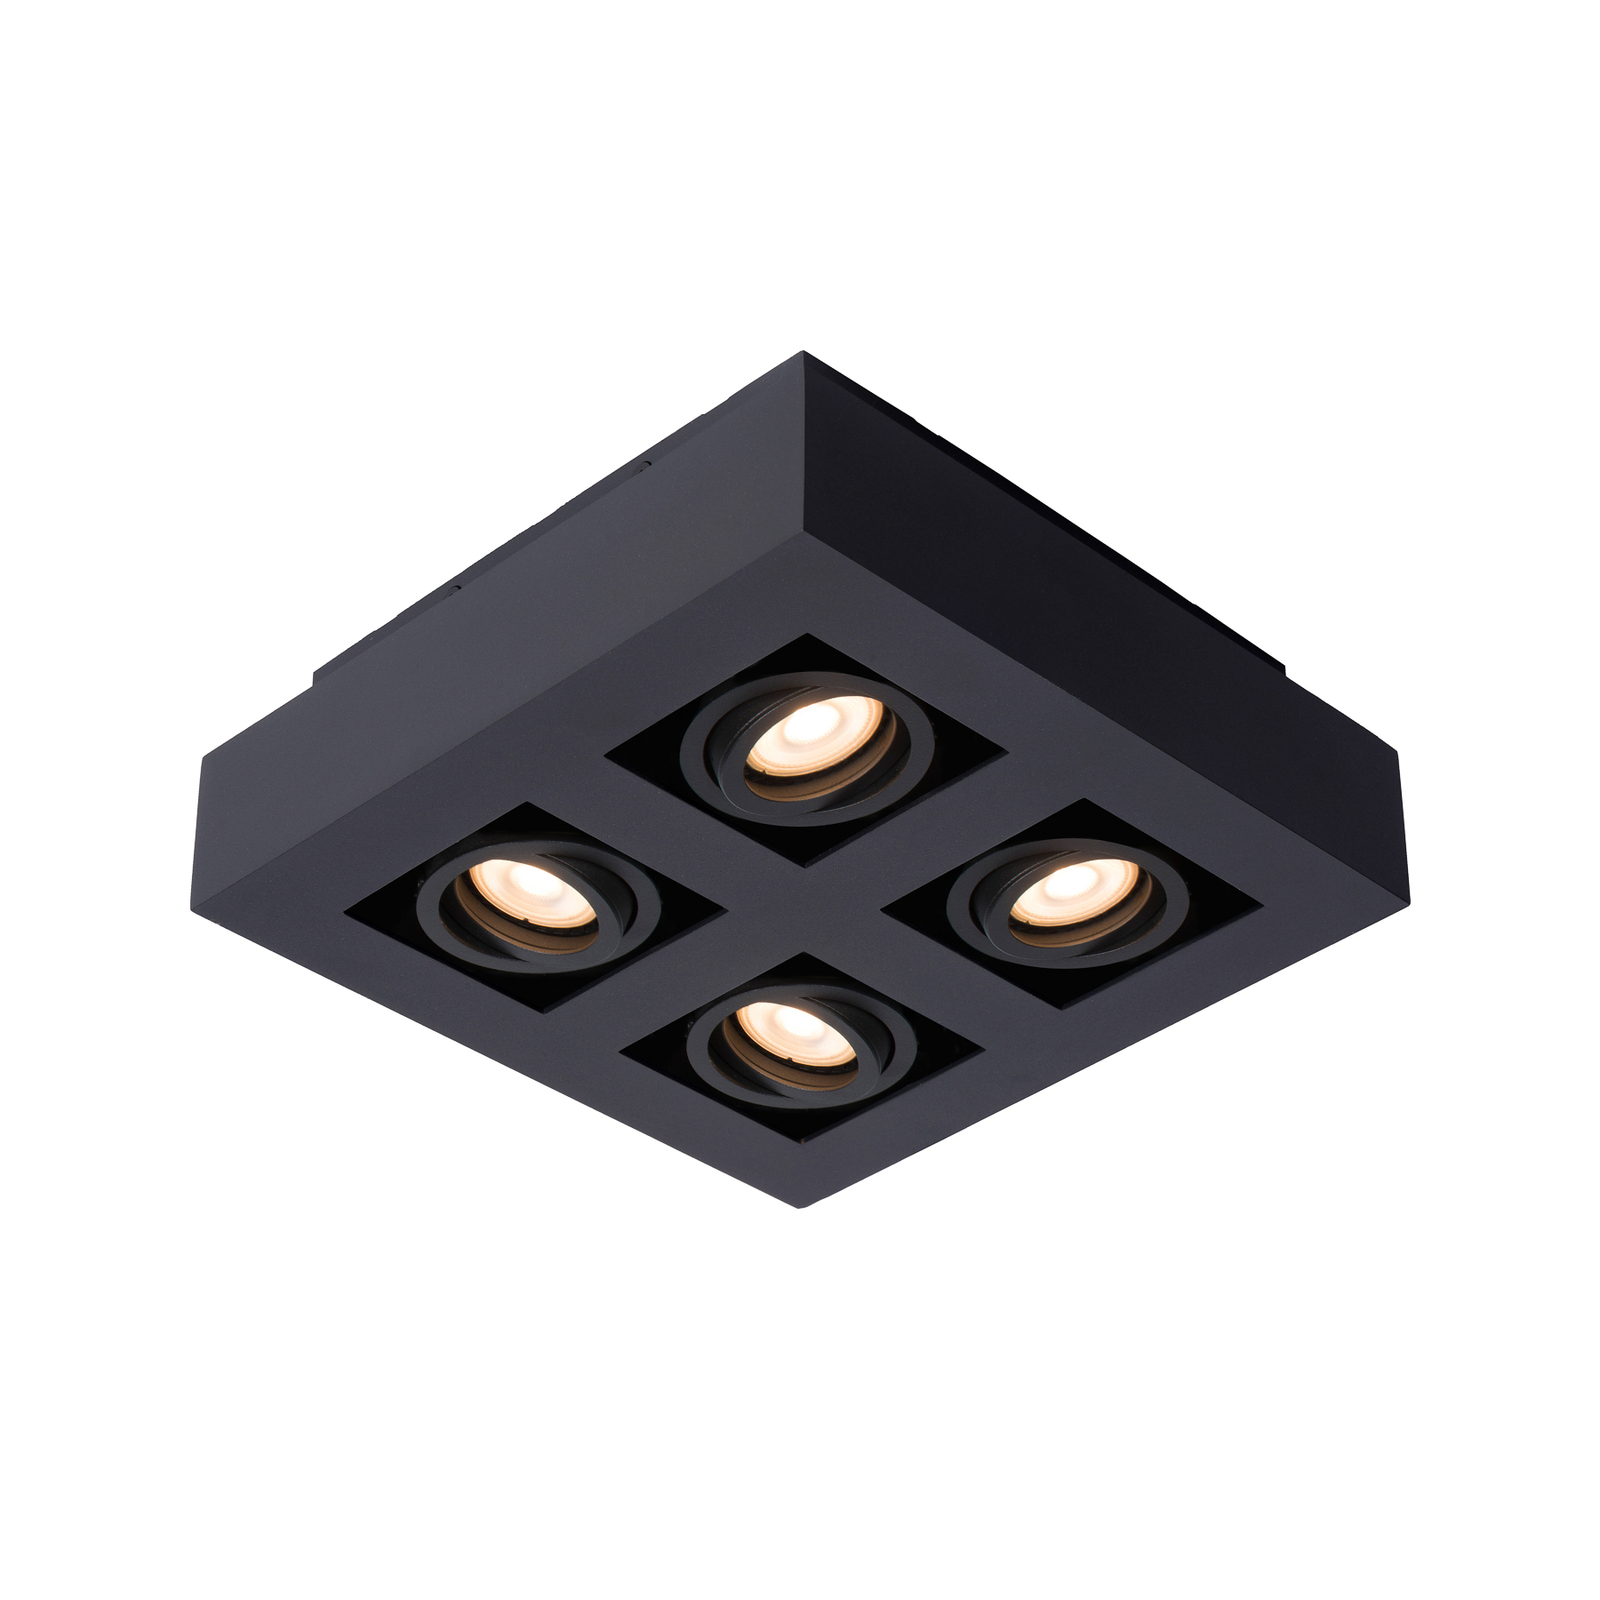 Прожектор за таван Xirax, четири светлини, черен